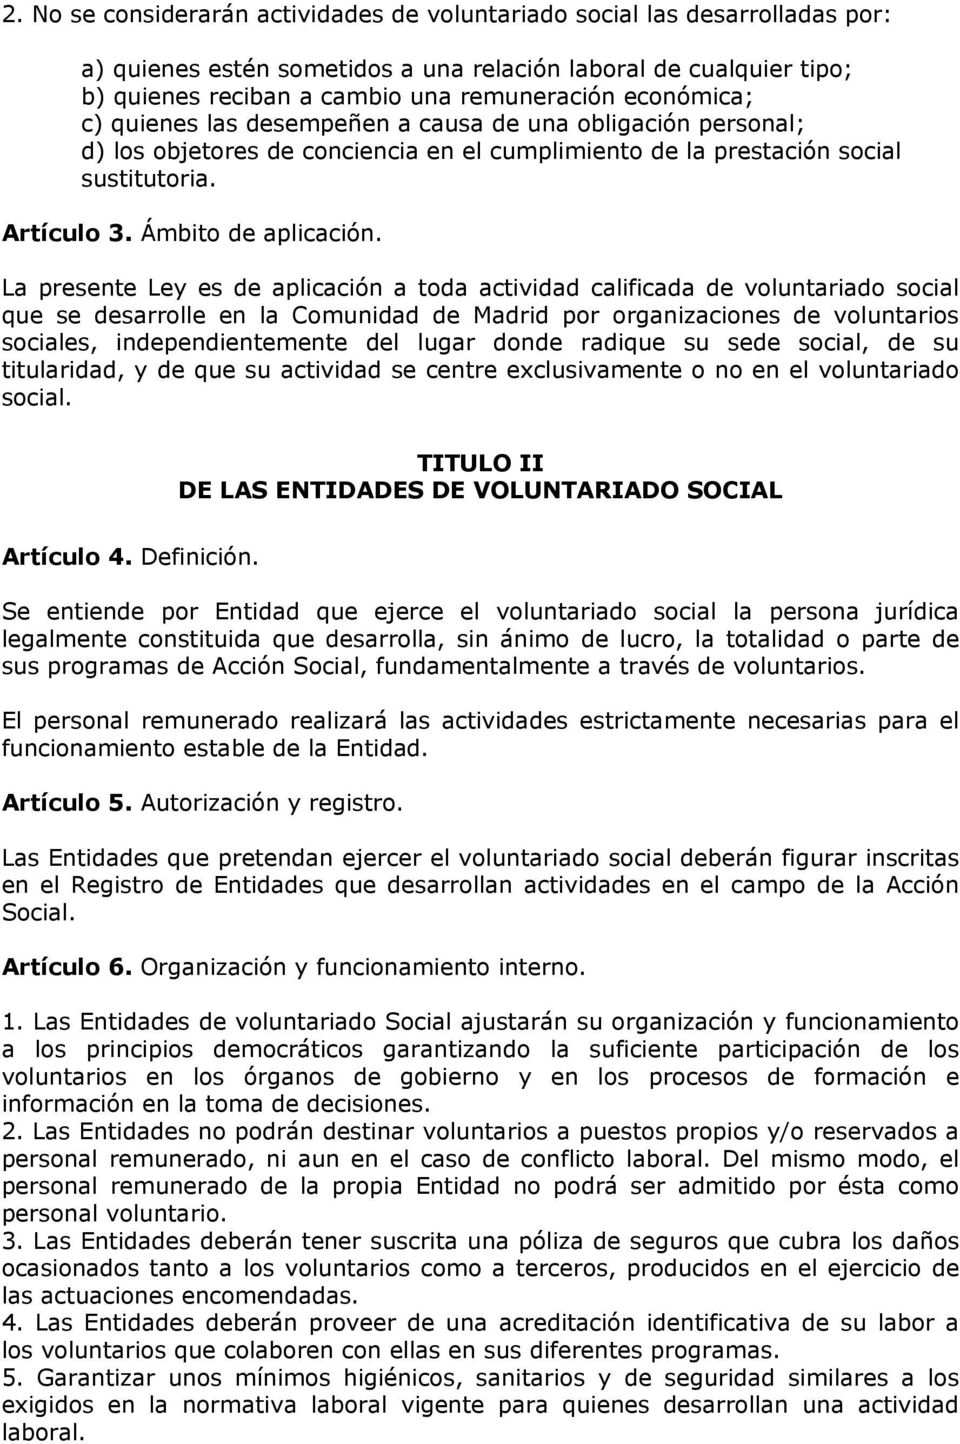 La presente Ley es de aplicación a toda actividad calificada de voluntariado social que se desarrolle en la Comunidad de Madrid por organizaciones de voluntarios sociales, independientemente del